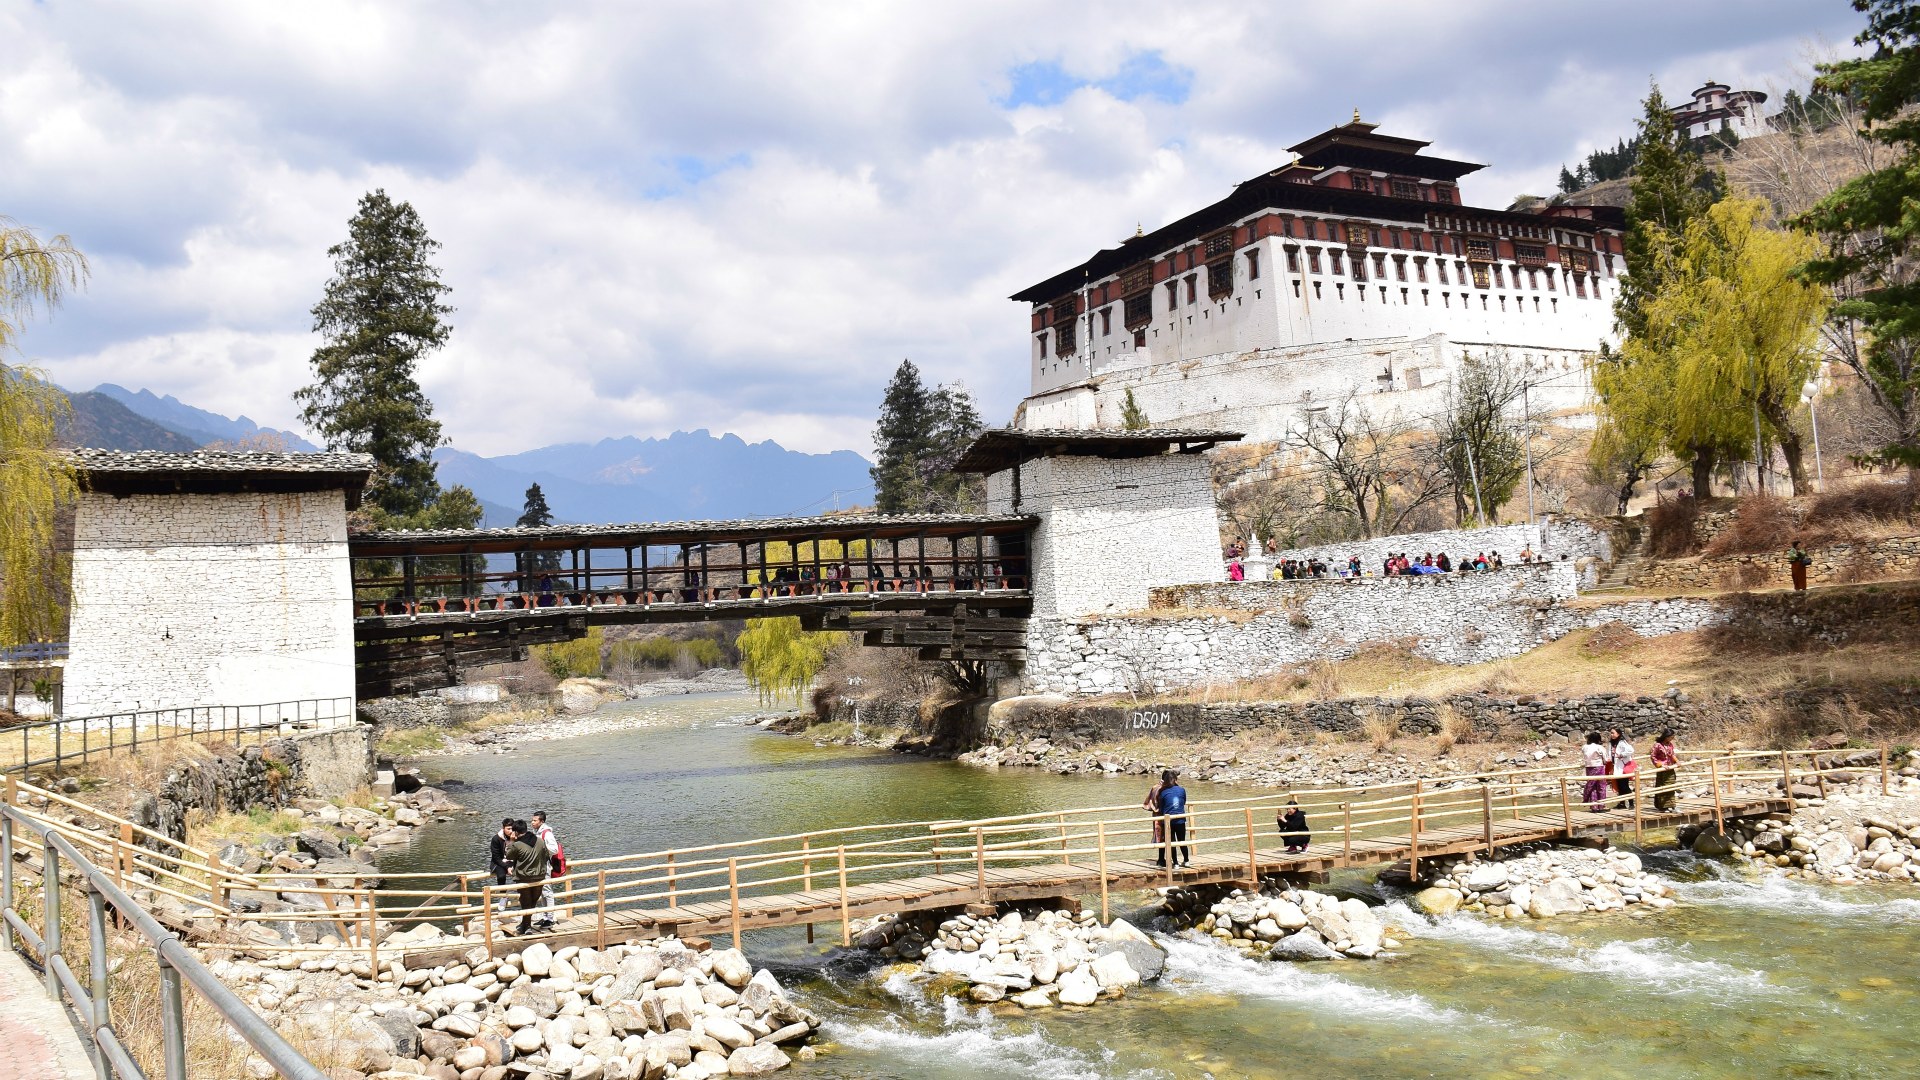 Rinpung Dzong, Paro